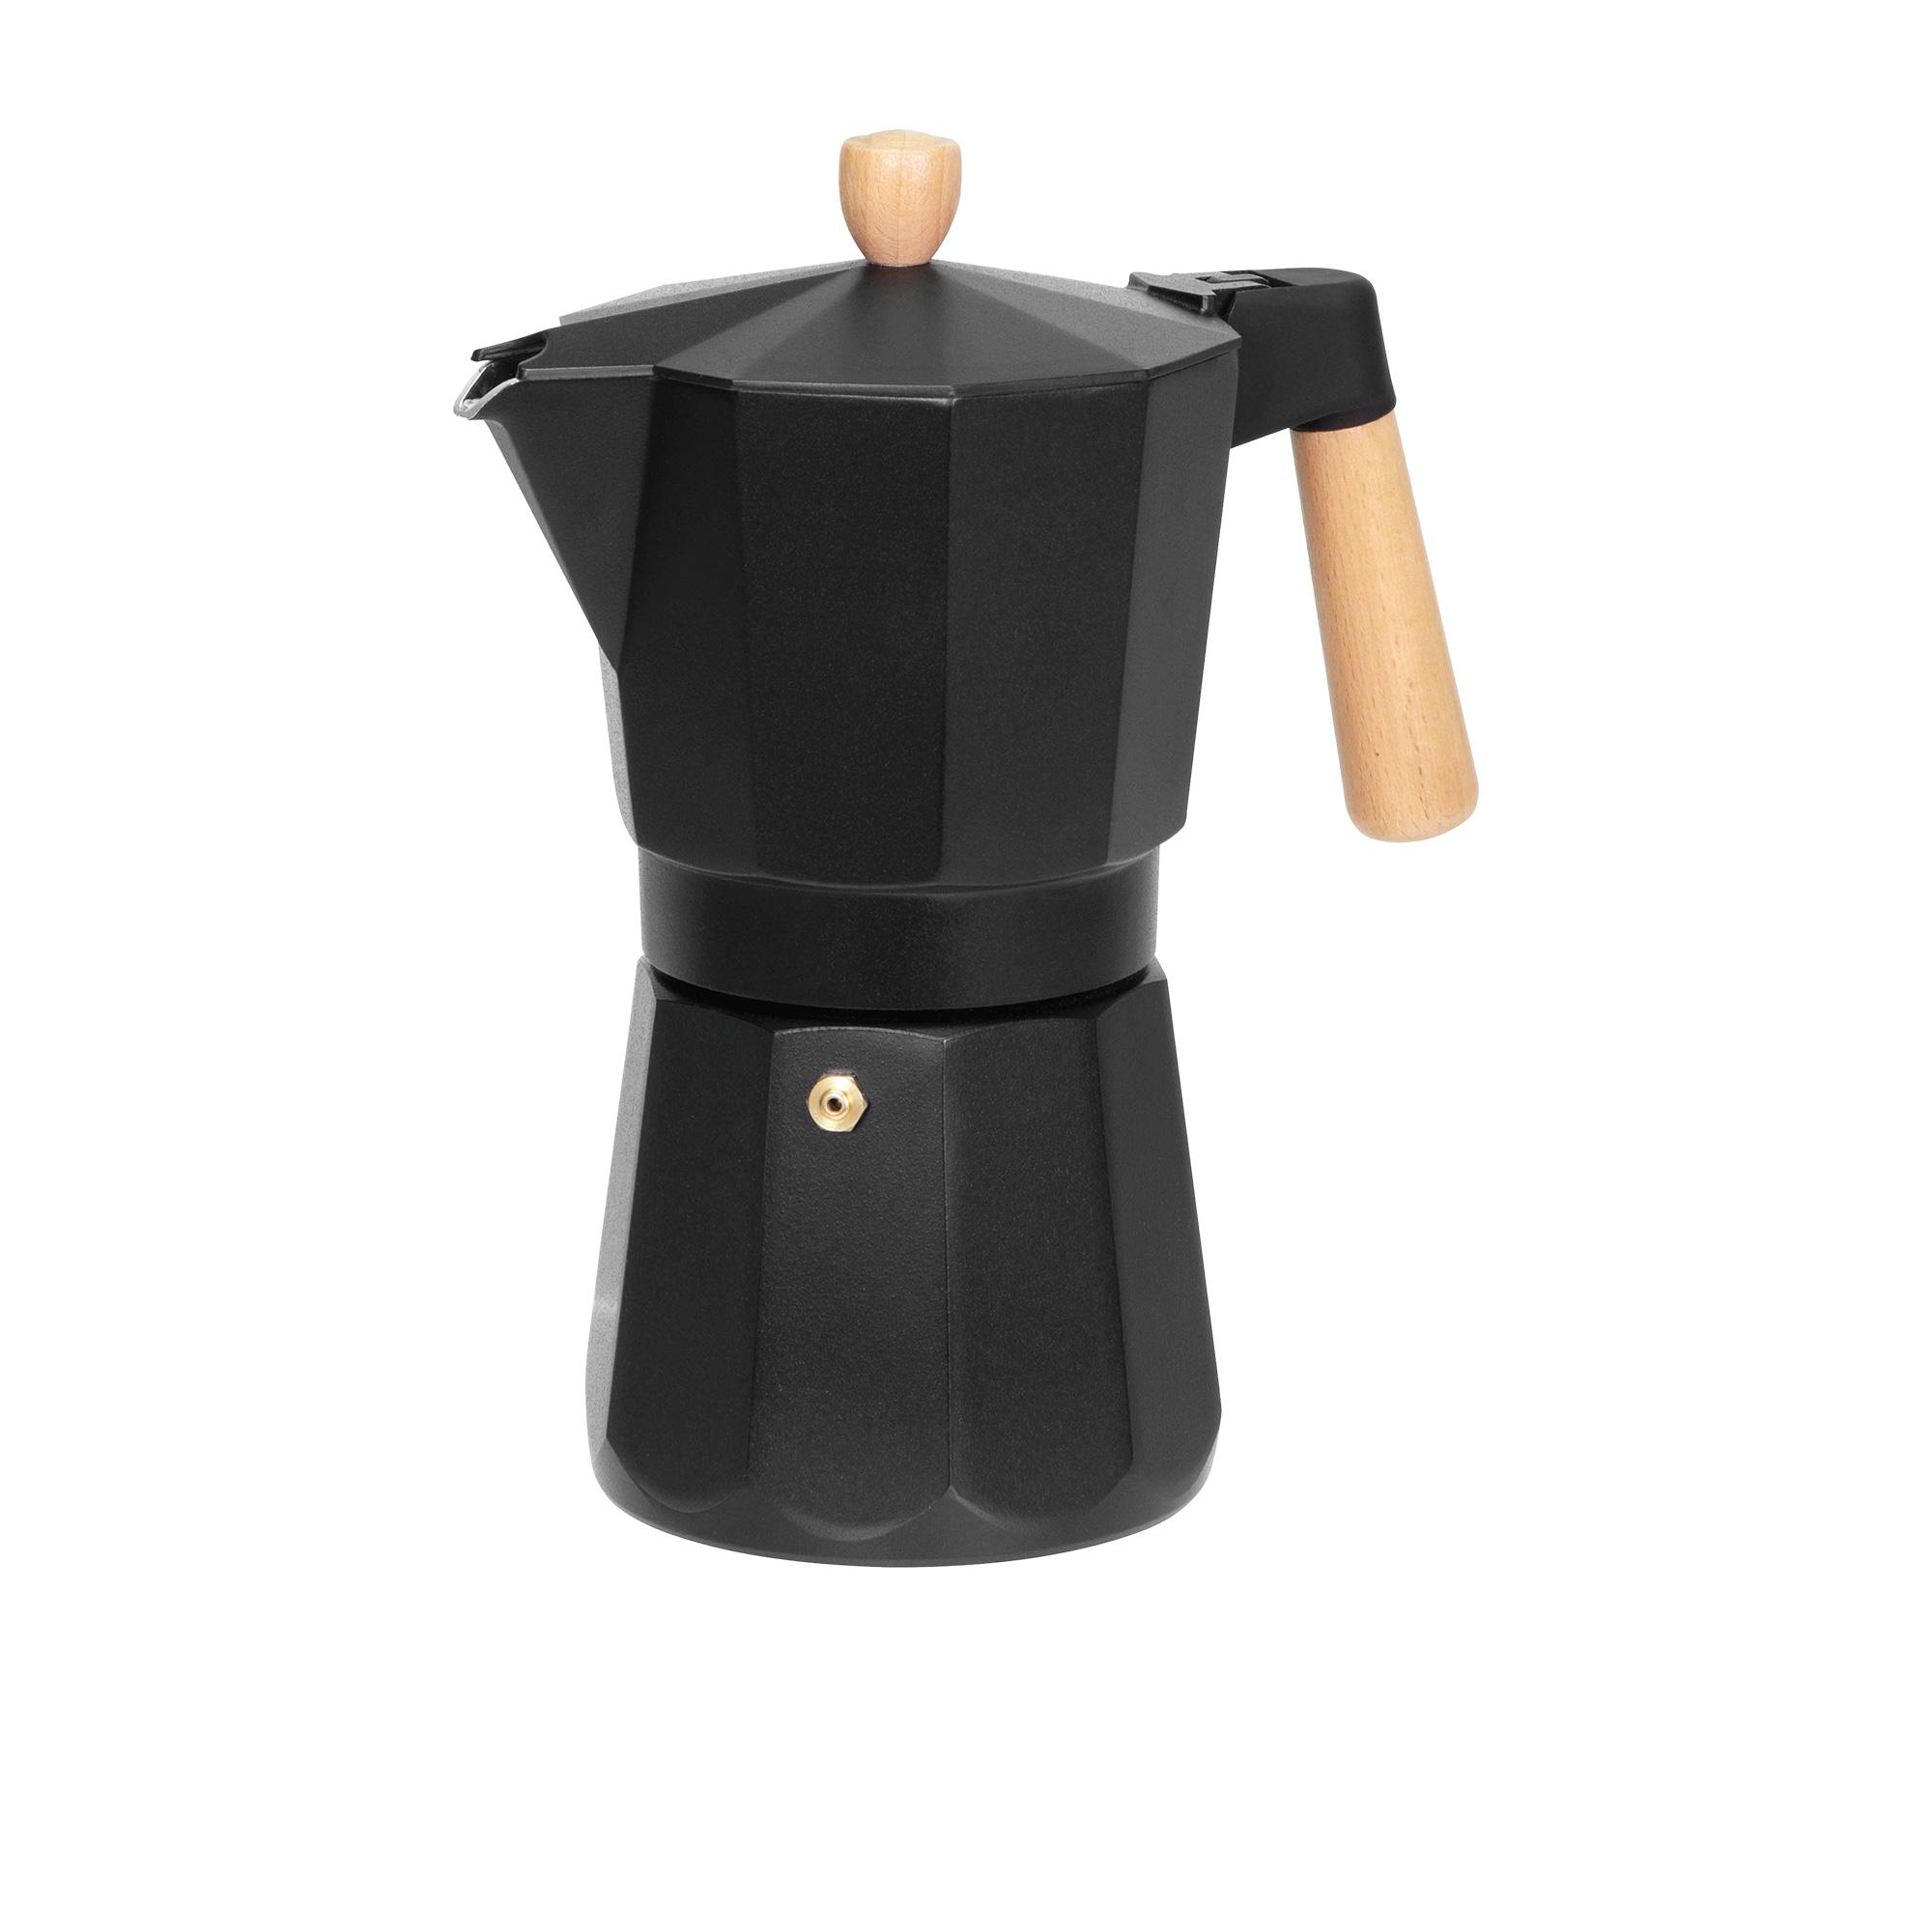 Avanti Malmo Espresso Maker 9 Cup Image 1